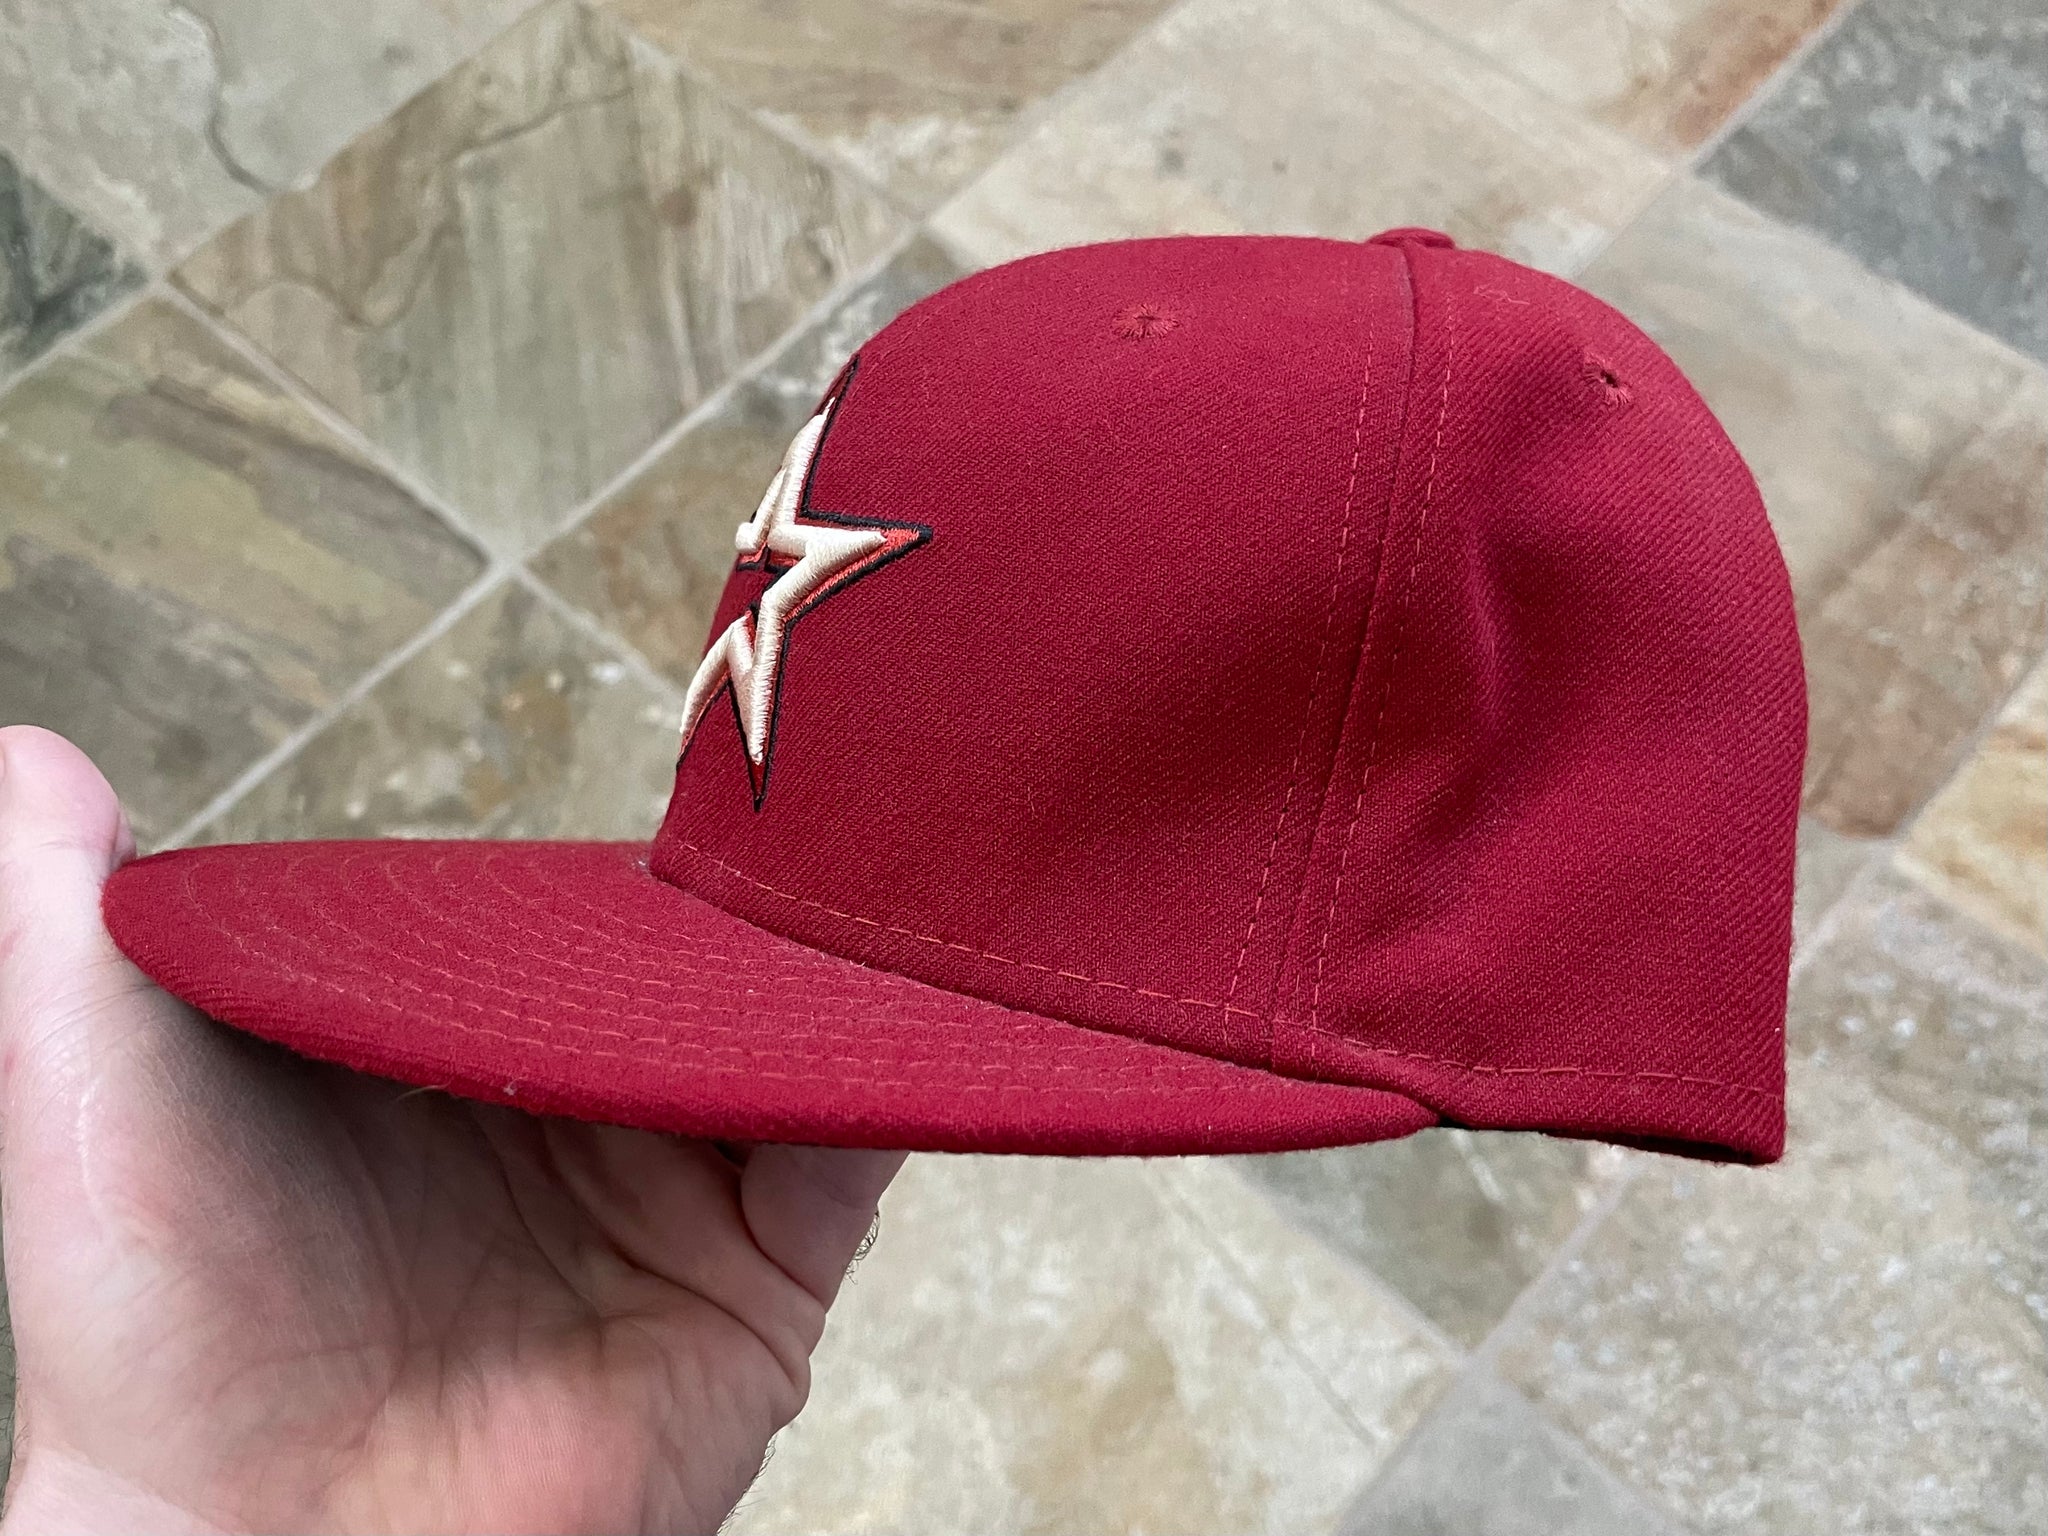 Vintage 90s Houston Astros Cap 